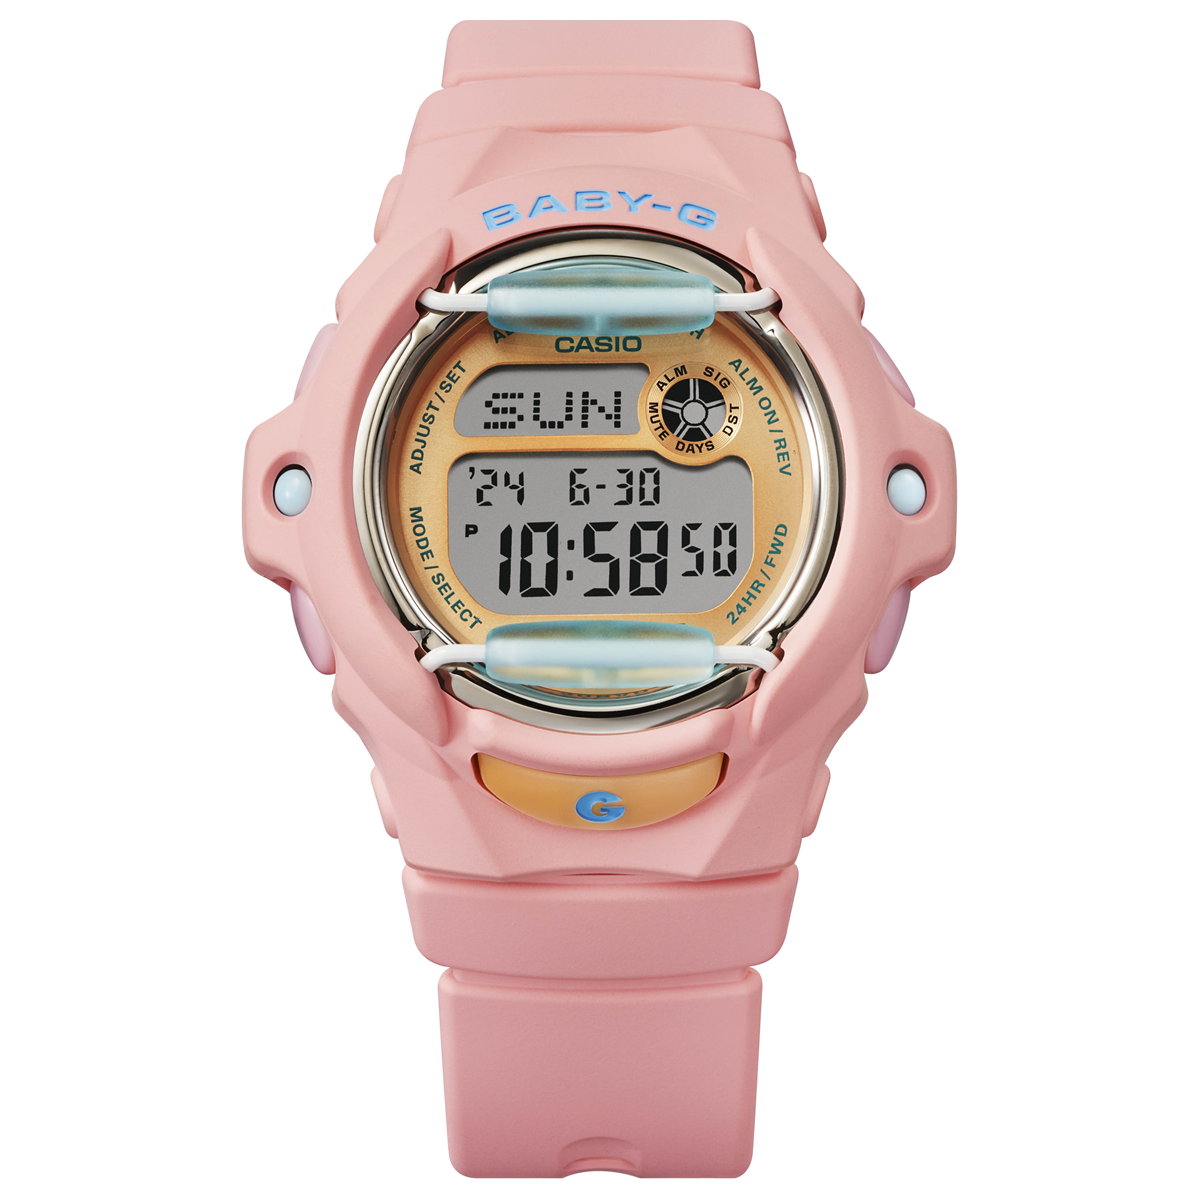 BABY-G カシオ ベビーG レディース 腕時計 BG-169PB-4JF 珊瑚 イメージ コーラルピンク